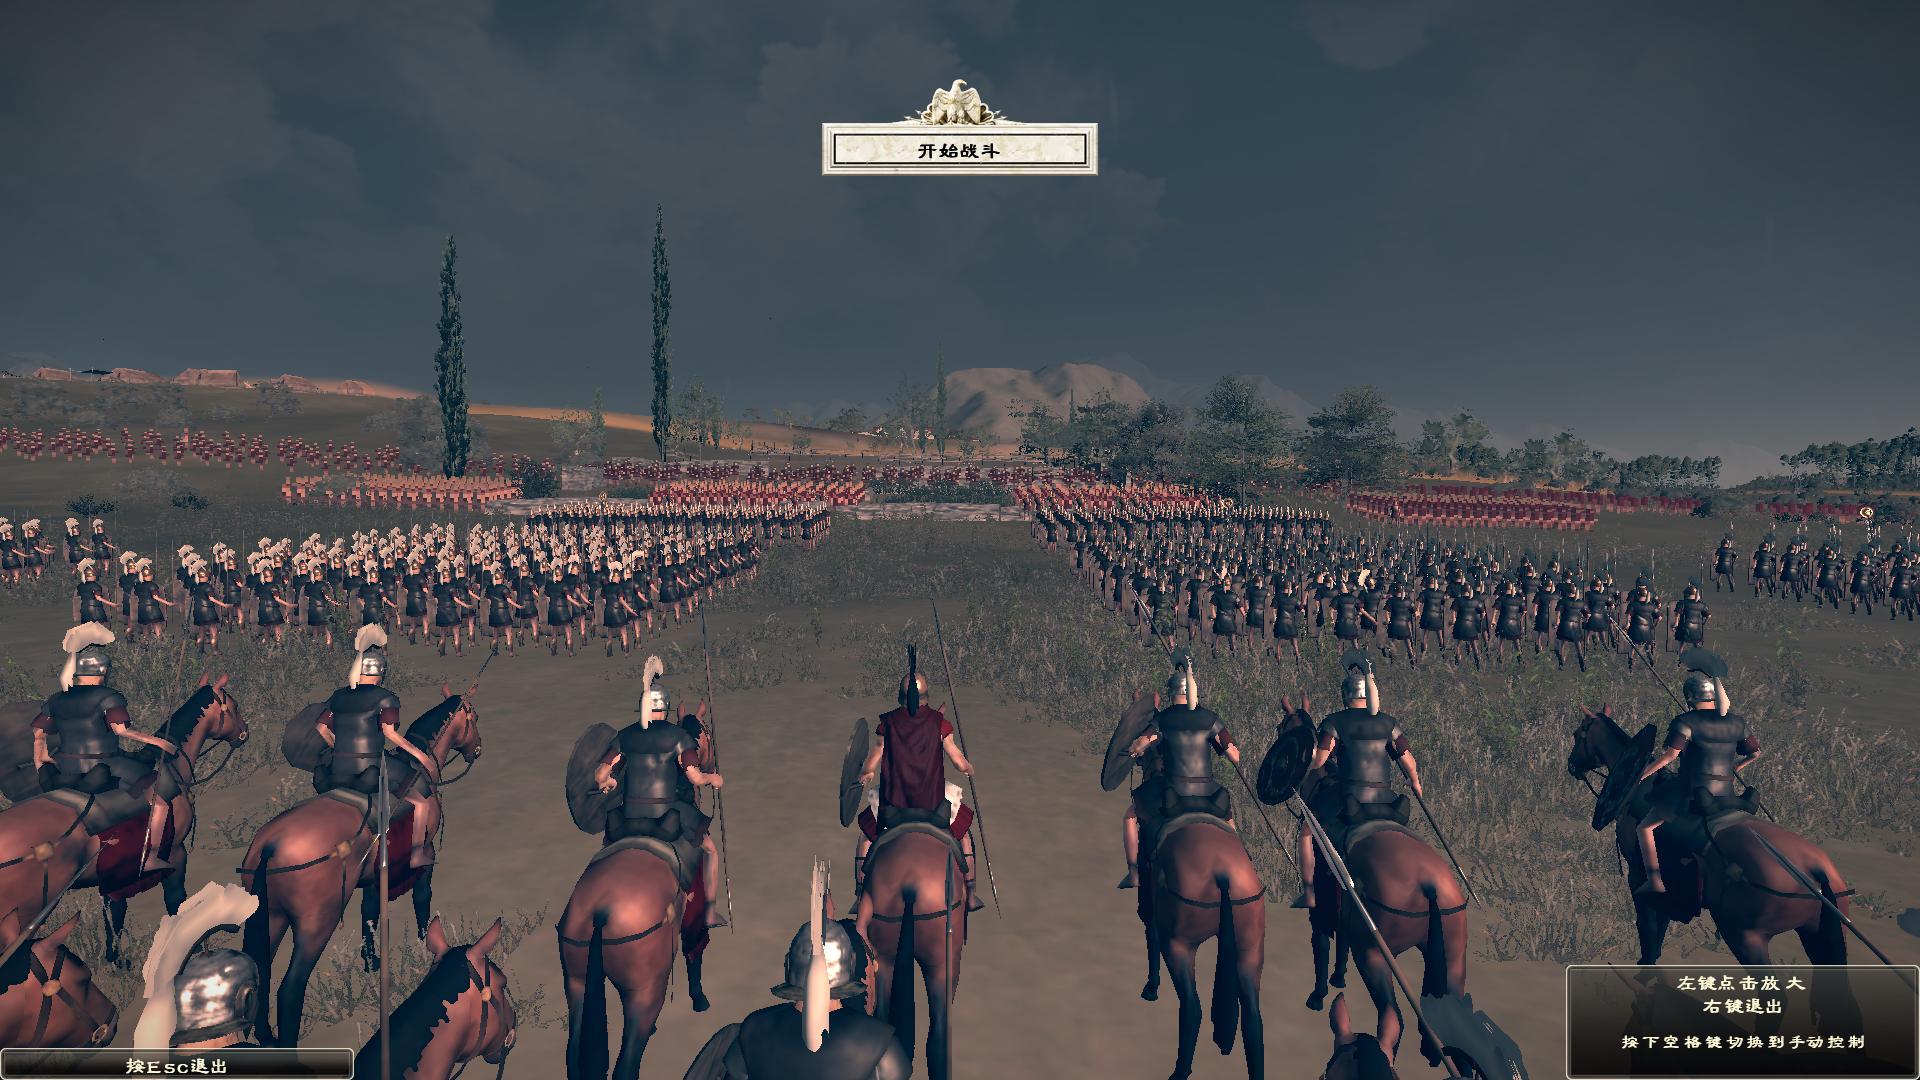 模拟带兵打仗战争游戏